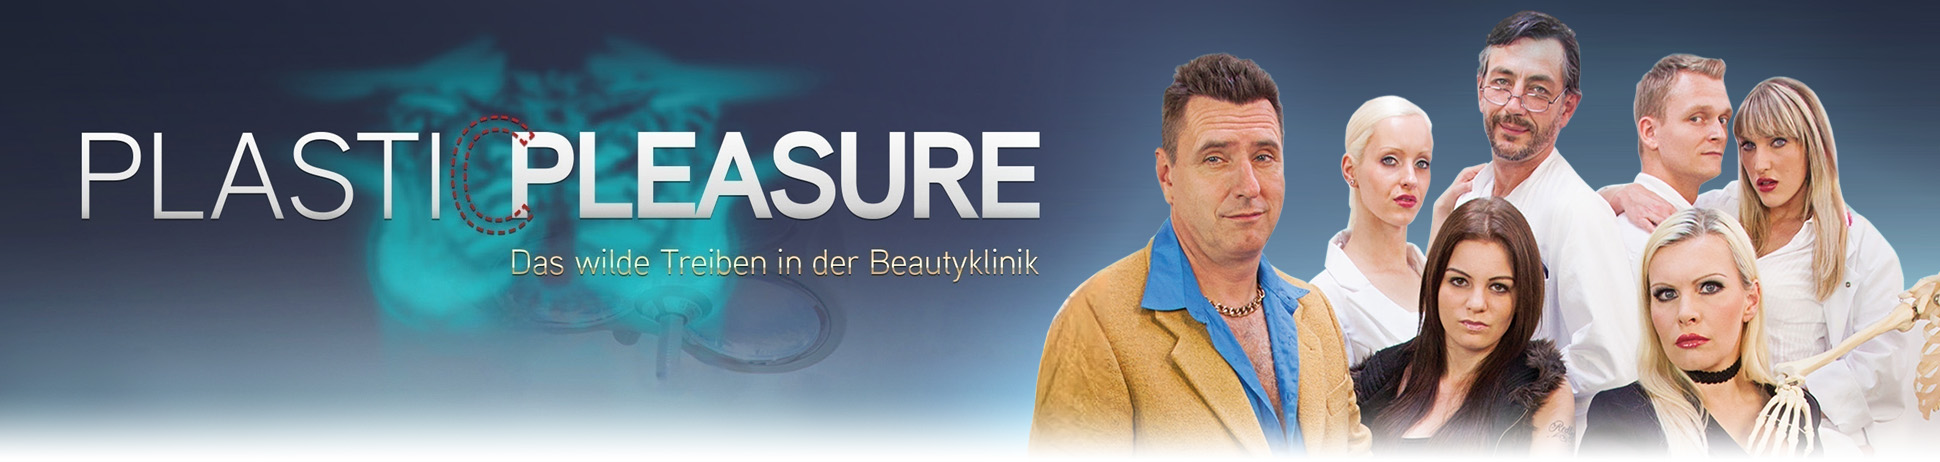 Plastic Pleasure - Das wilde Treiben in der Beautyklinik